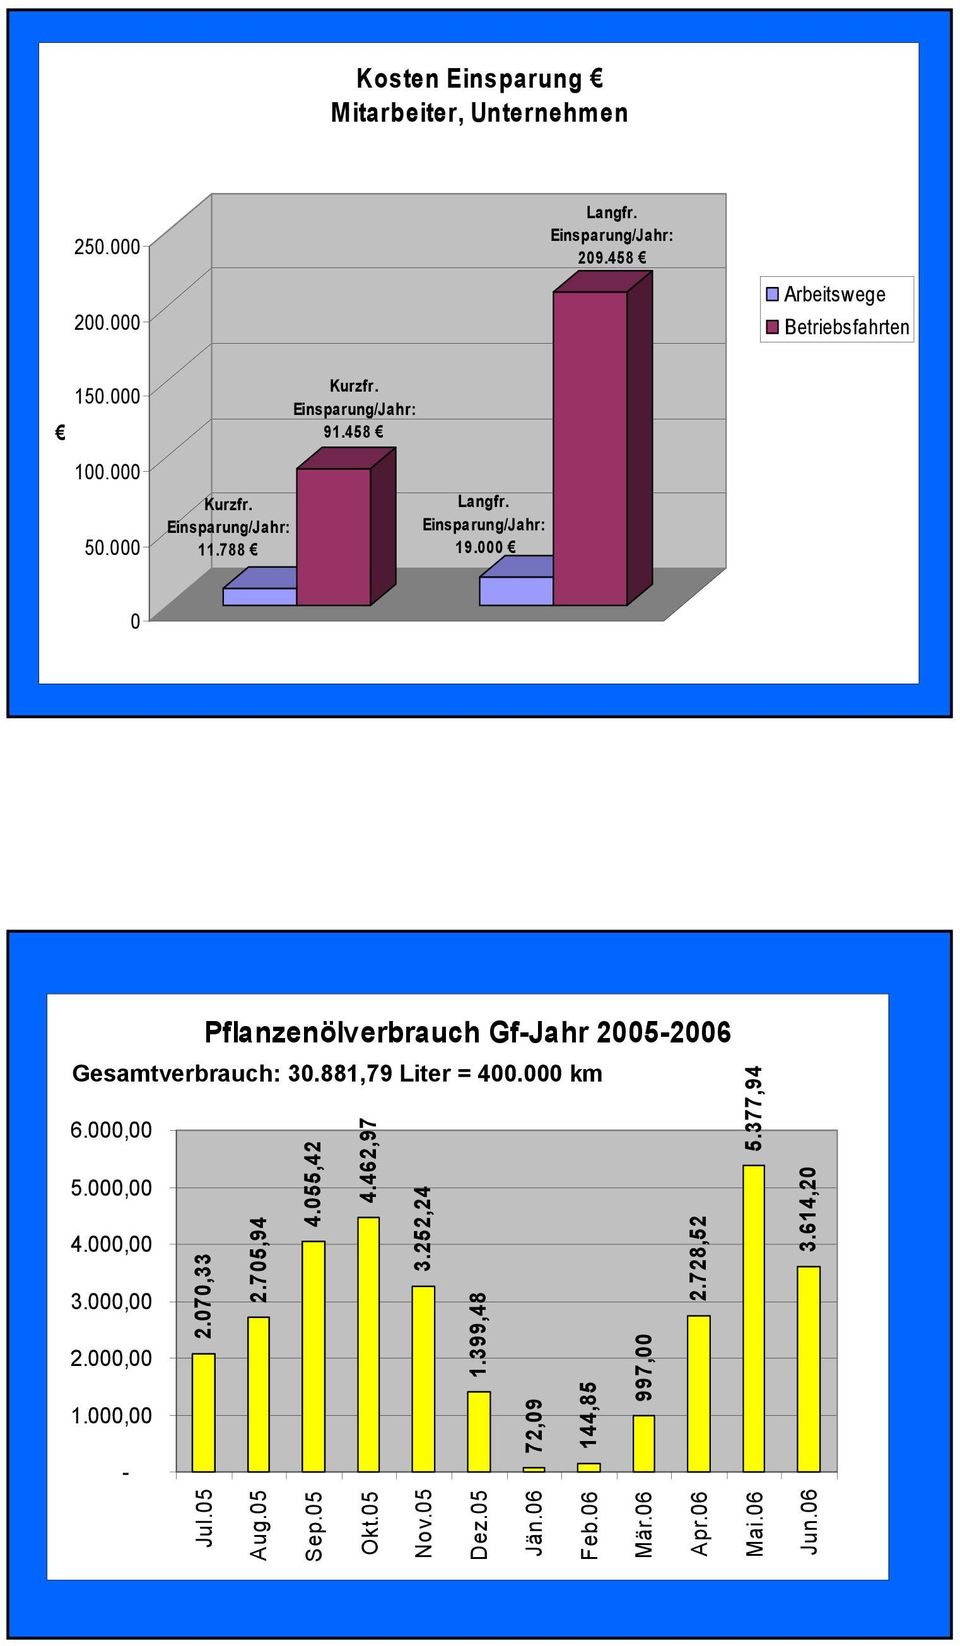 000,00 1.000,00 - Pflanzenölverbrauch Gf-Jahr 2005-2006 Gesamtverbrauch: 30.881,79 Liter = 400.000 km 2.070,33 2.705,94 4.055,42 4.462,97 3.